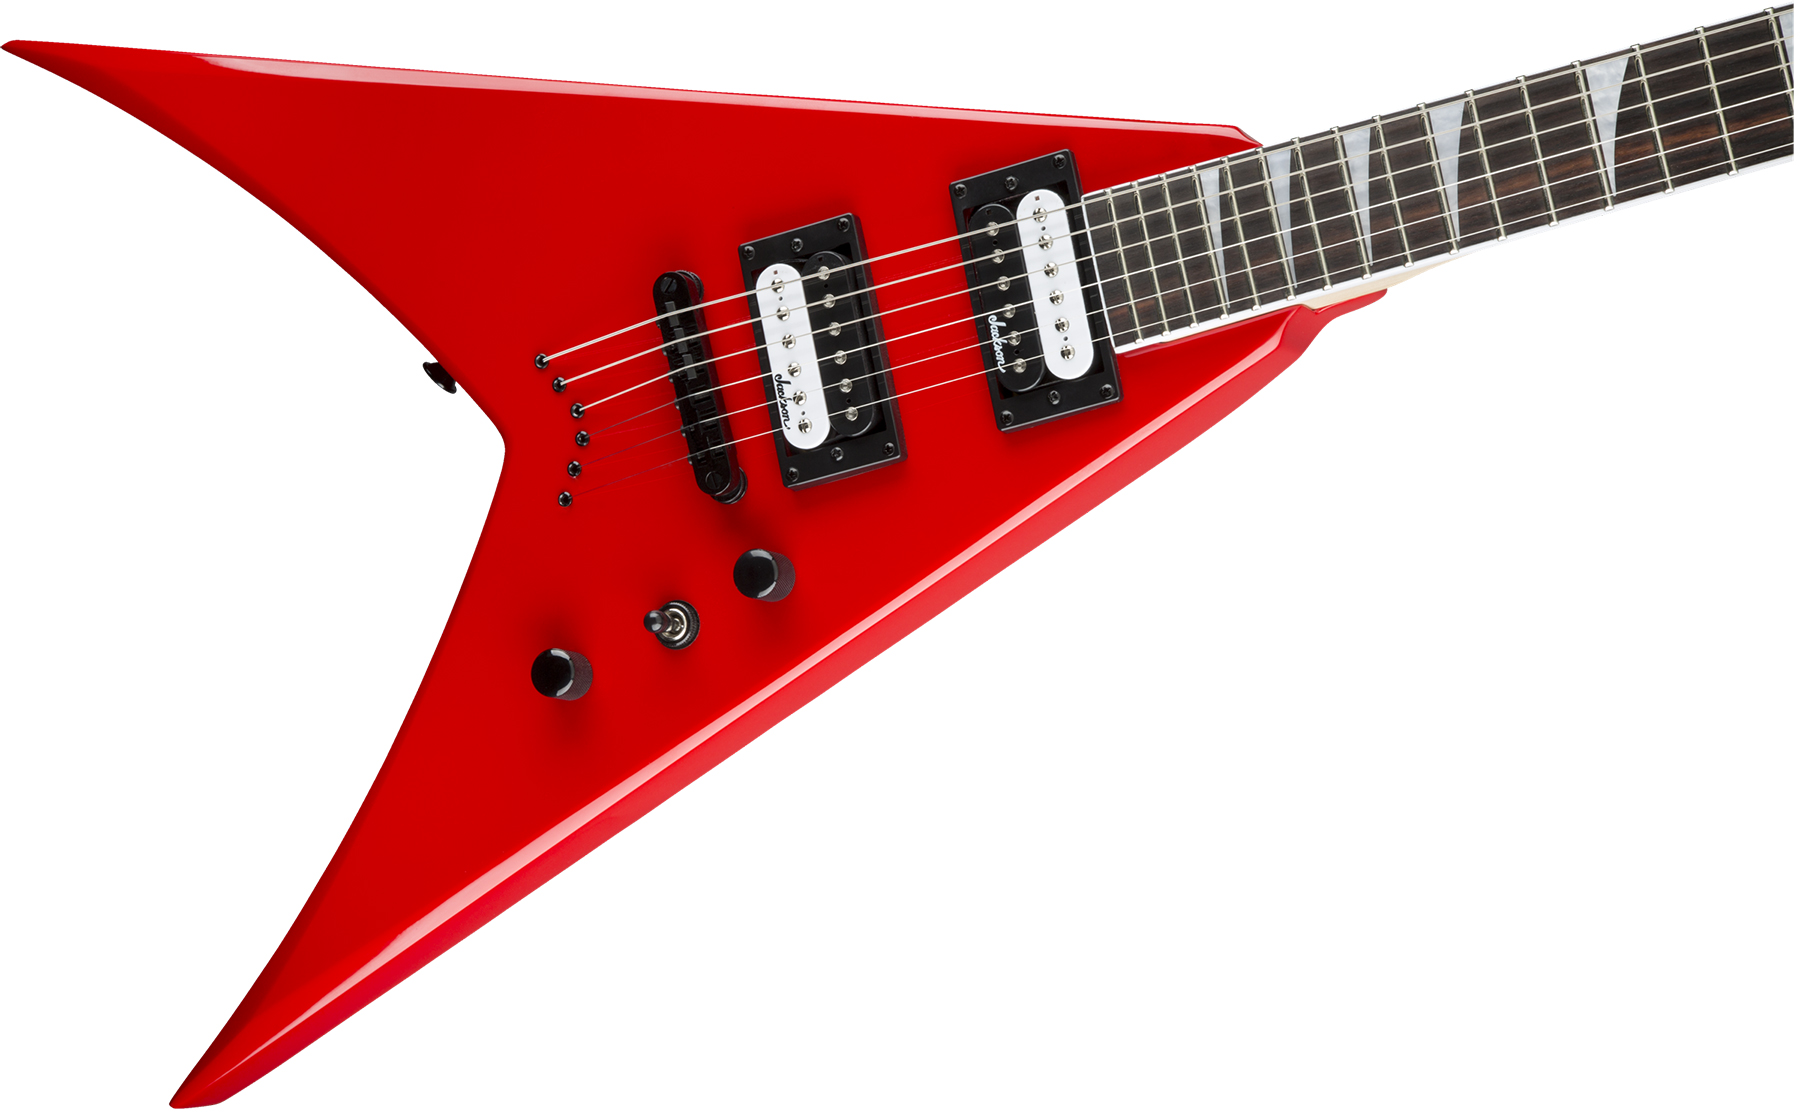 Jackson King V Js32t 2h Ht Ama - Ferrari Red - Guitarra electrica metalica - Variation 2